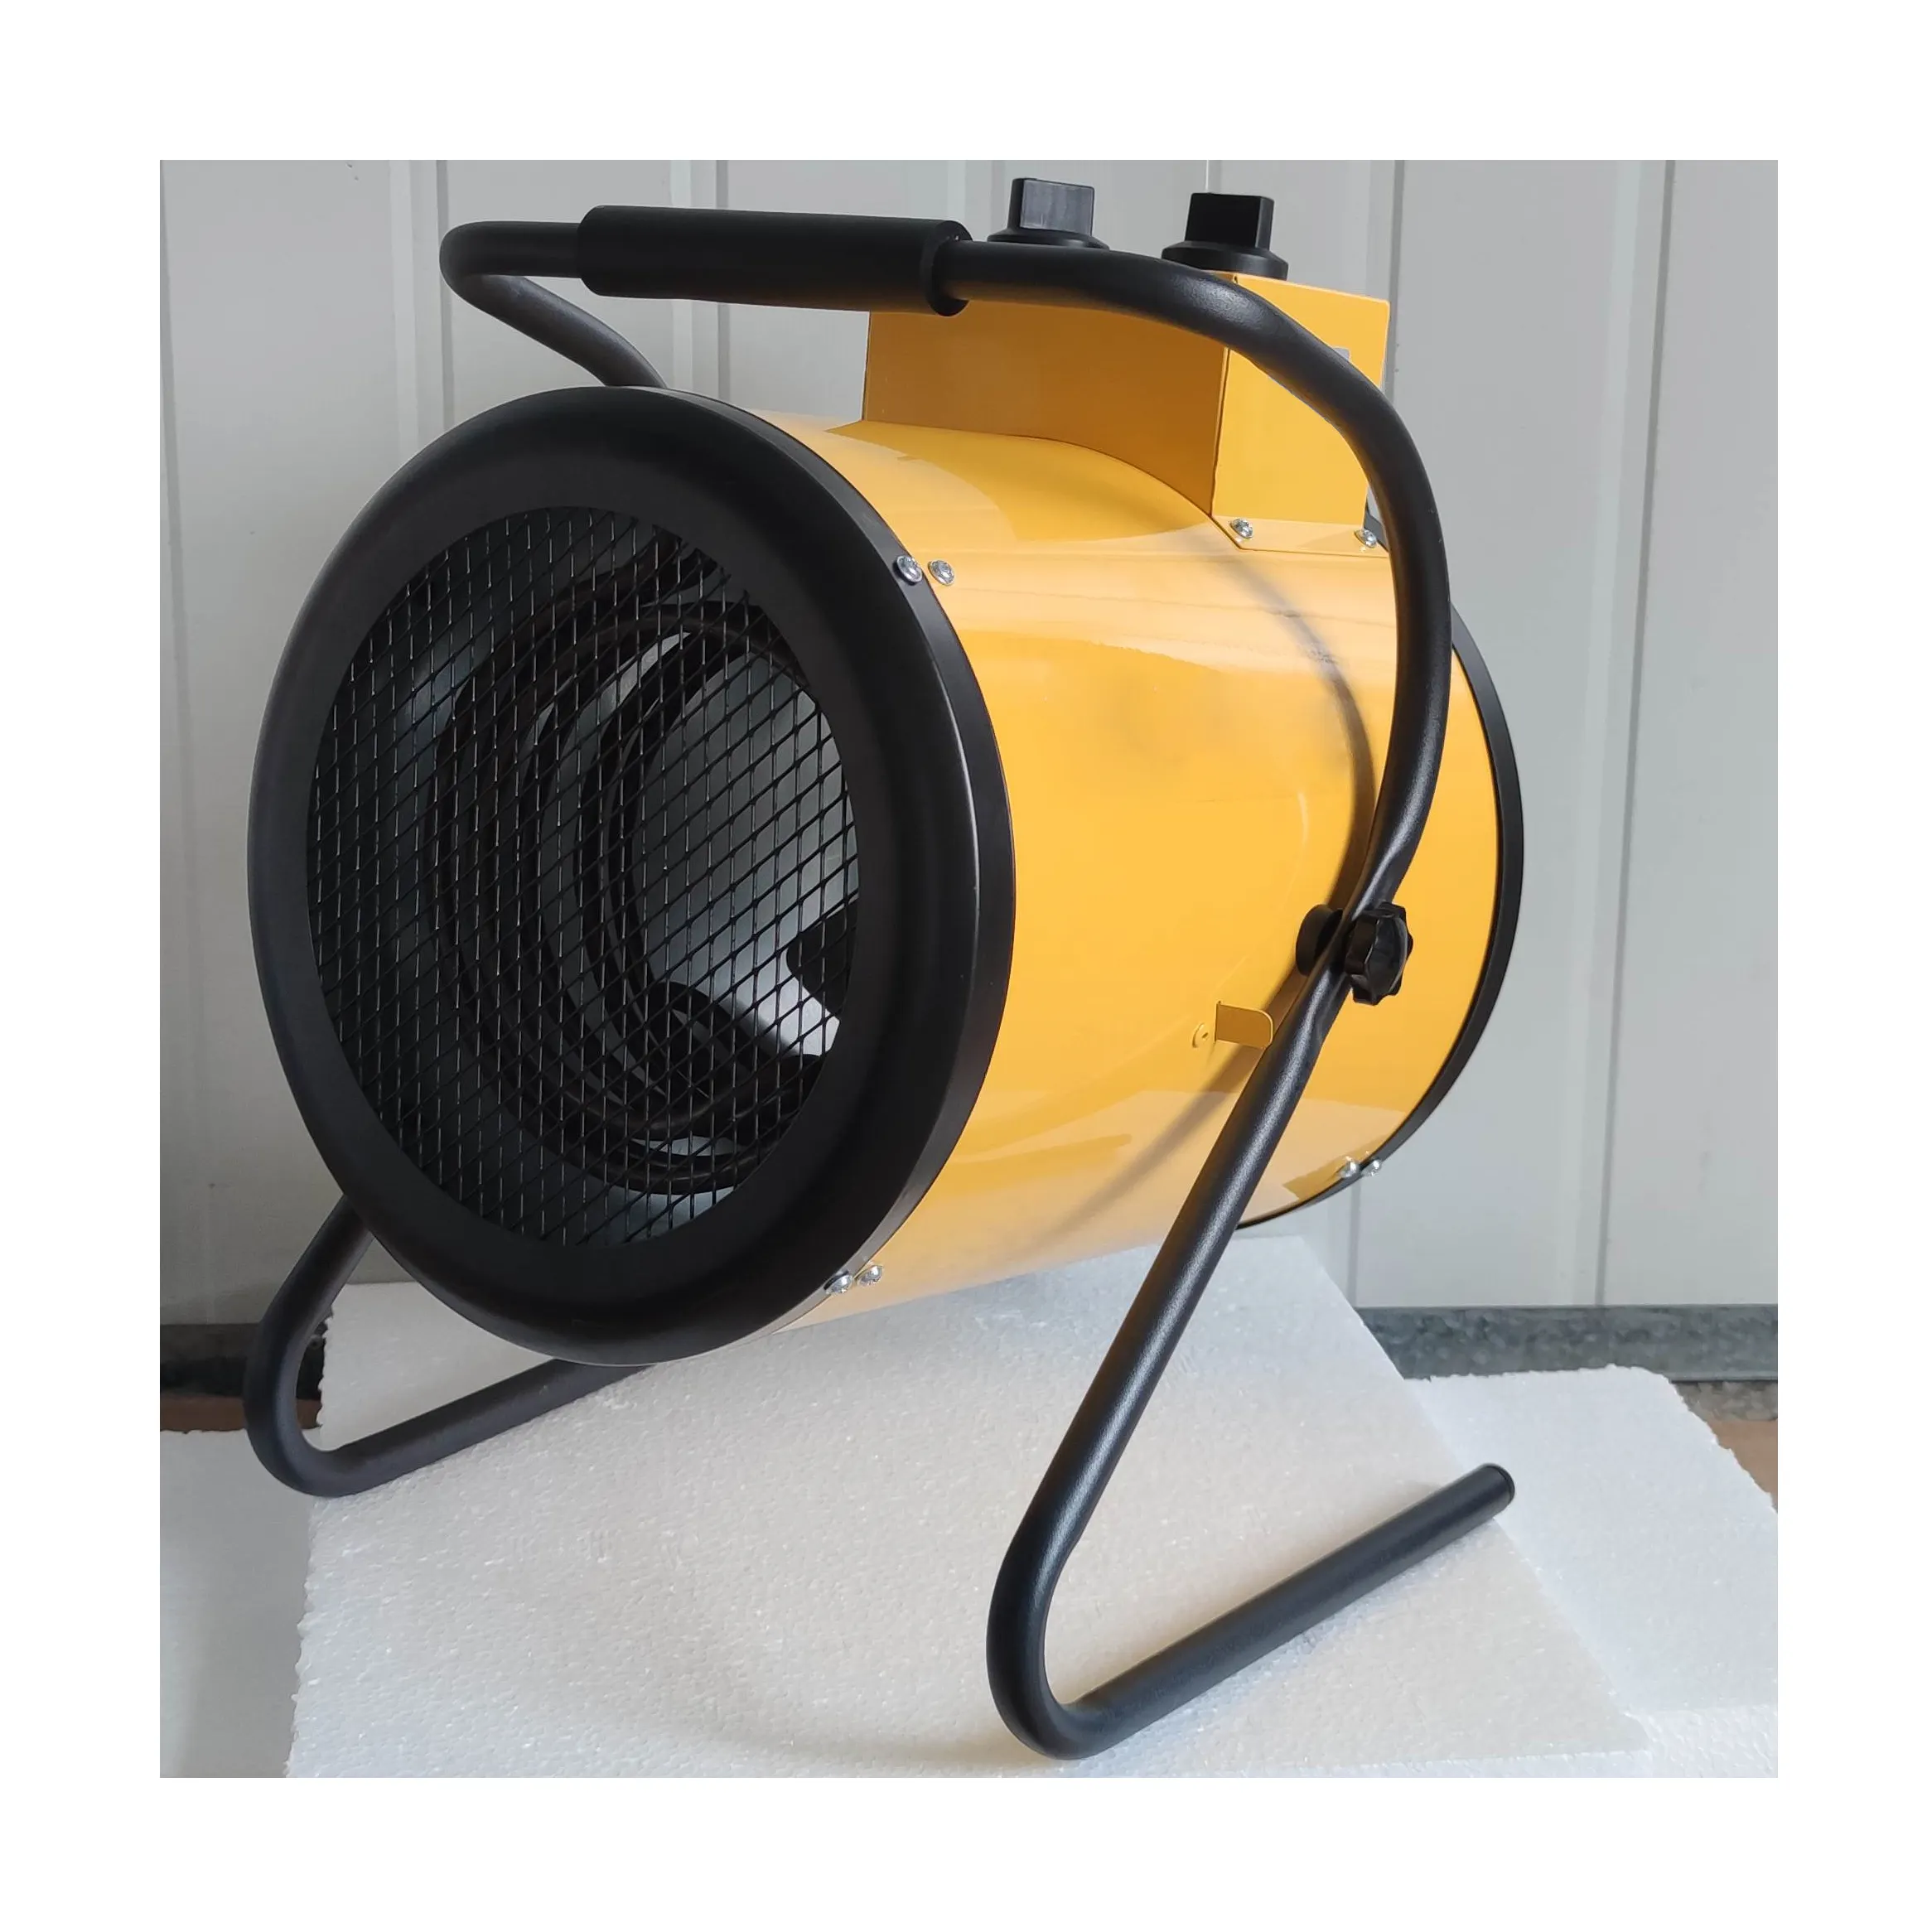 3Kw Industriële Kachel 3000W Elektrische Ventilator Kachel Met Thermostaat Gecontroleerd Voor Workshop Garage Kas